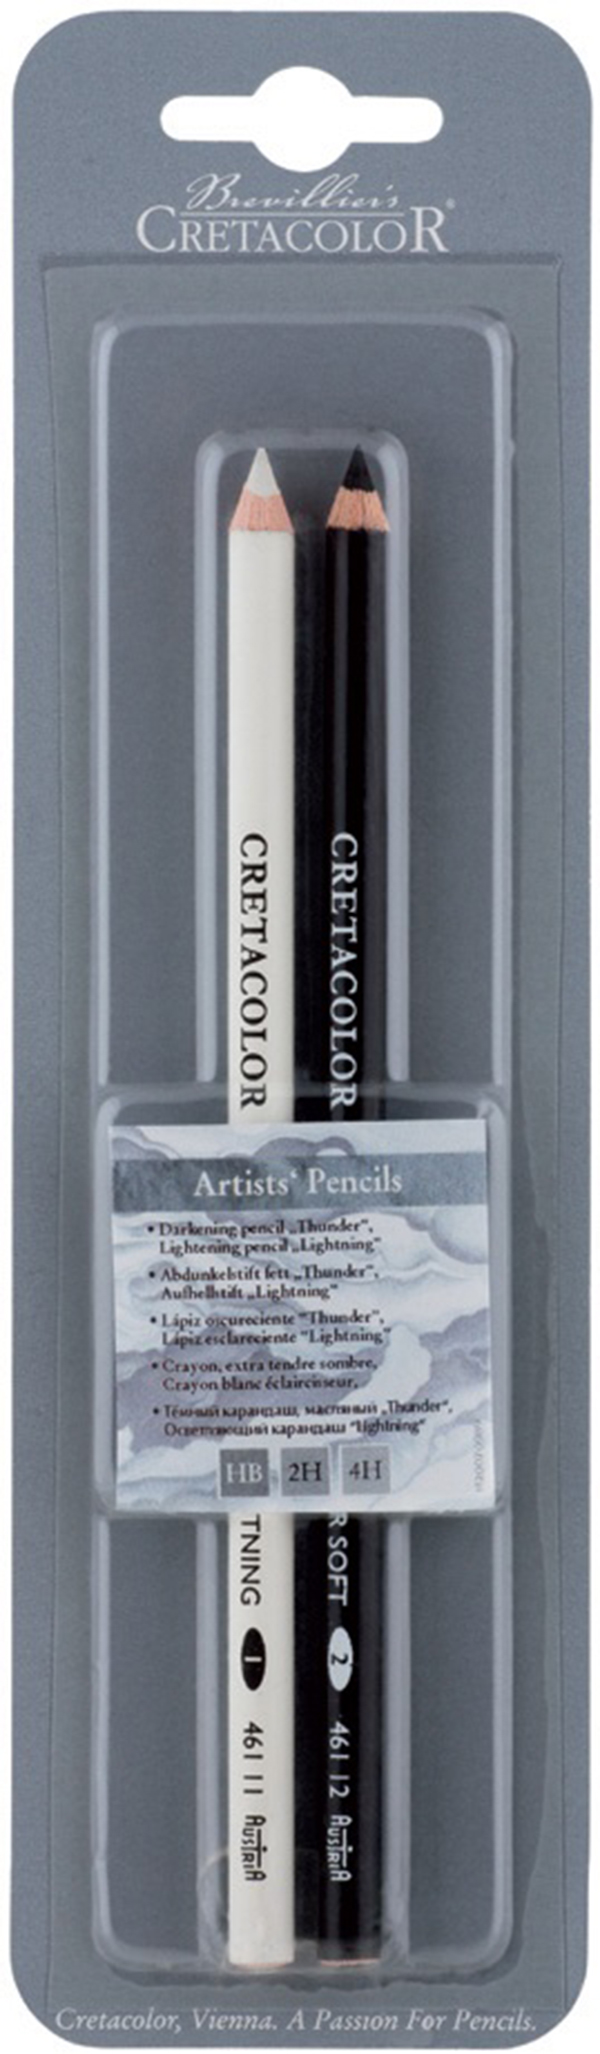 фото Набор художественных карандашей "гром и молния" cretacolor